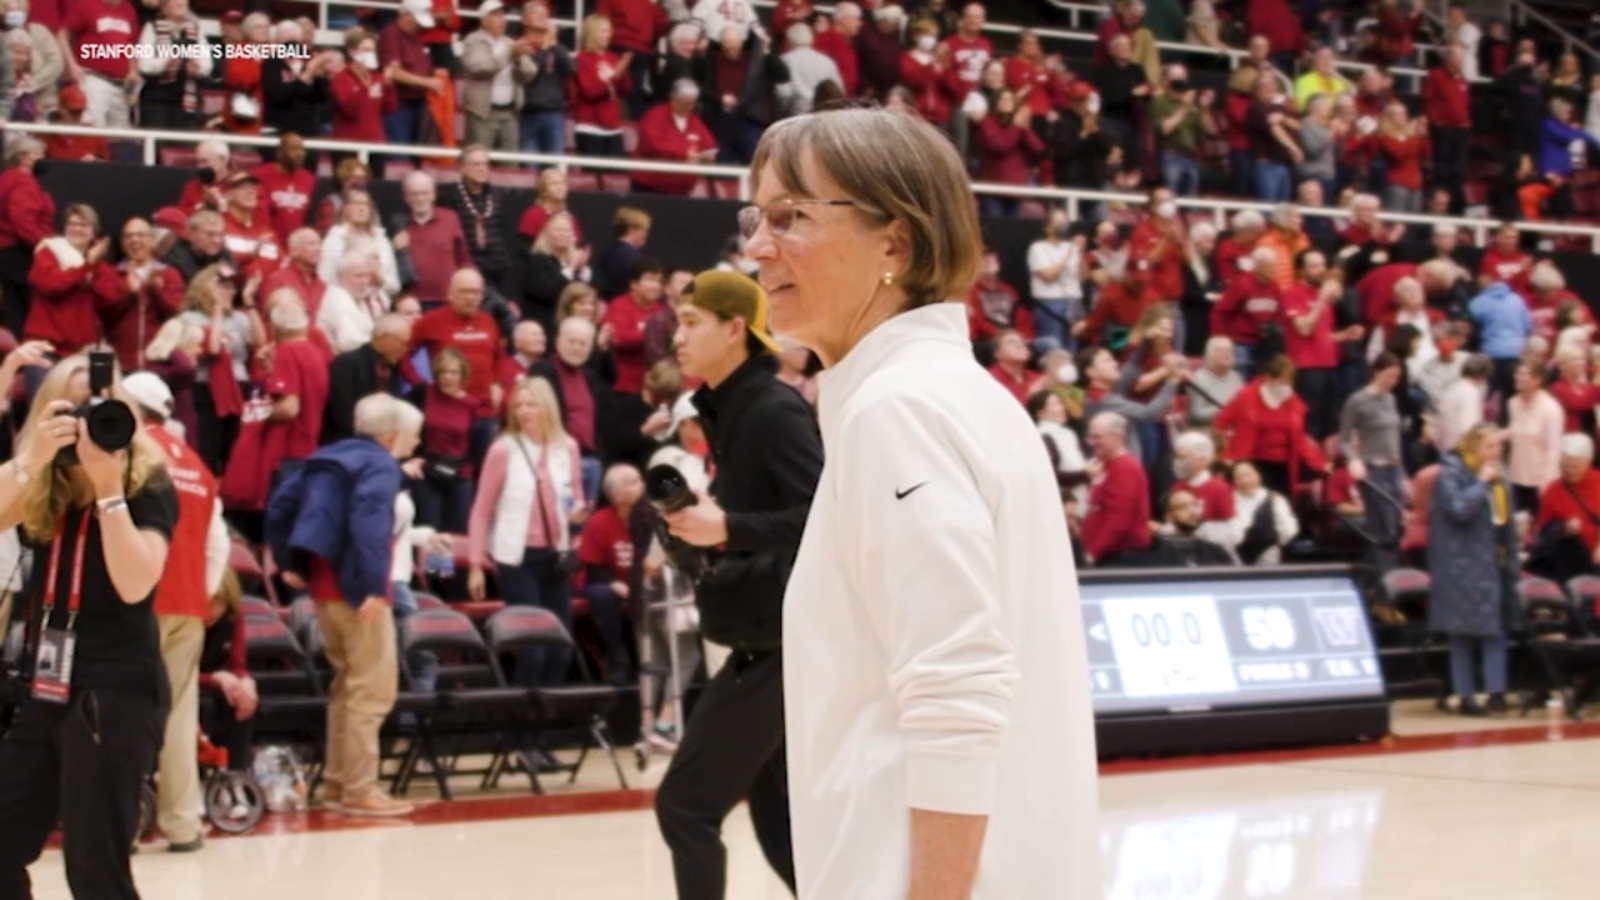 Tara VanDerveer, winningest basketball coach in NCAA history, retires after 38 seasons leading Stanford women’s team [Video]